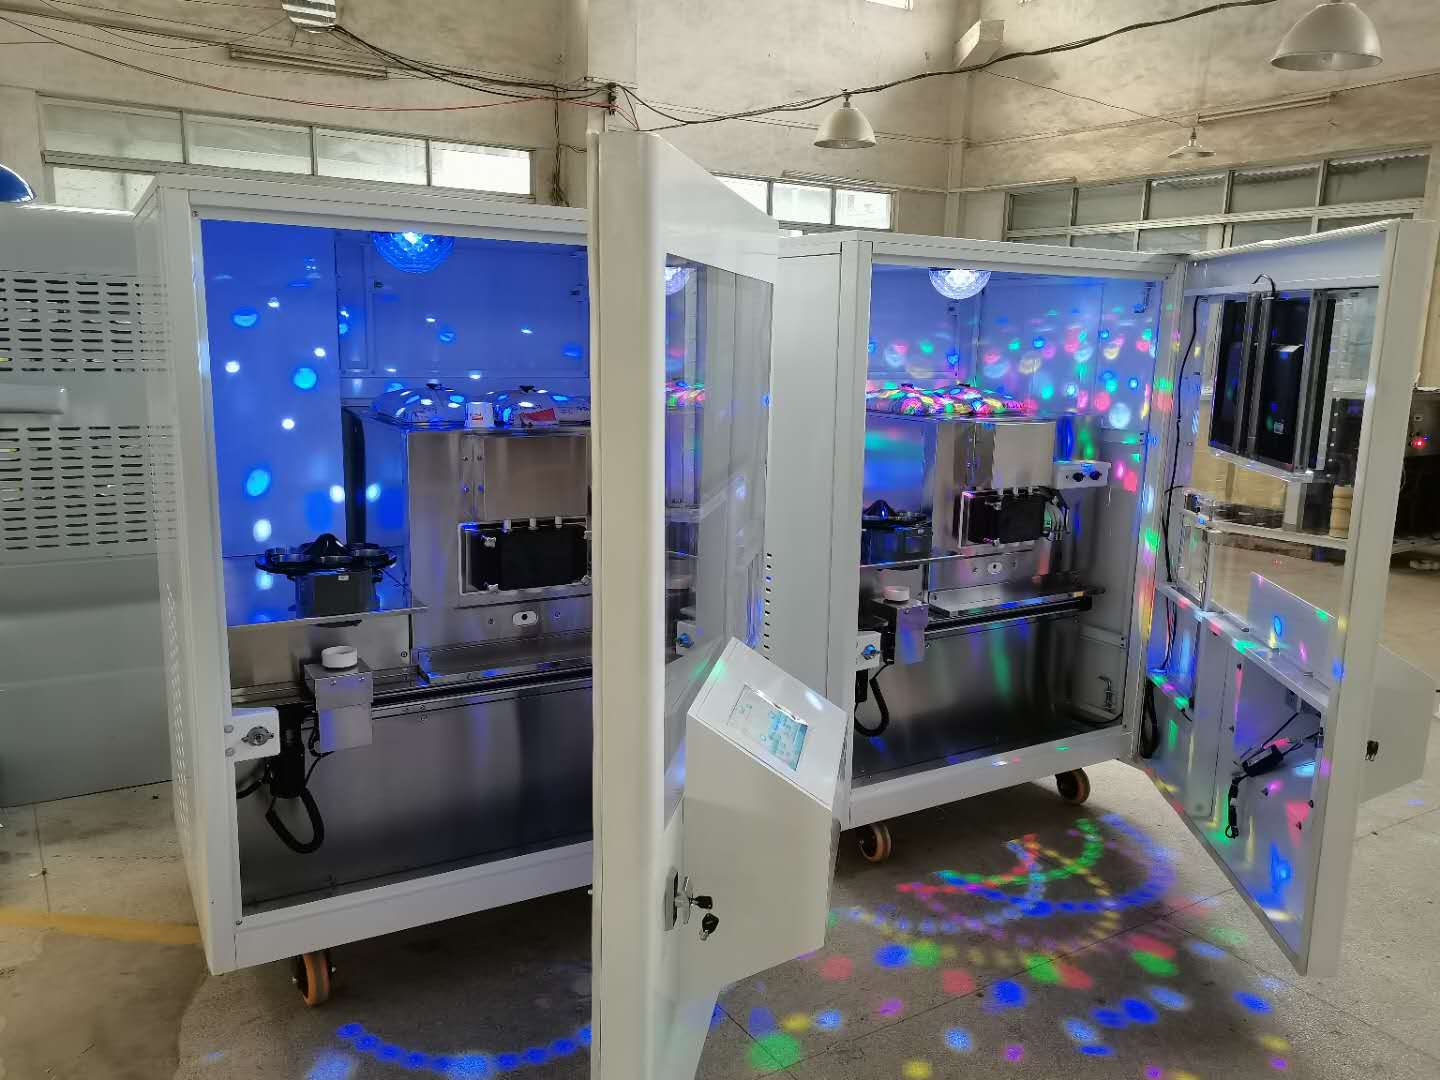 Robot que hace la máquina expendedora de yogur congelado